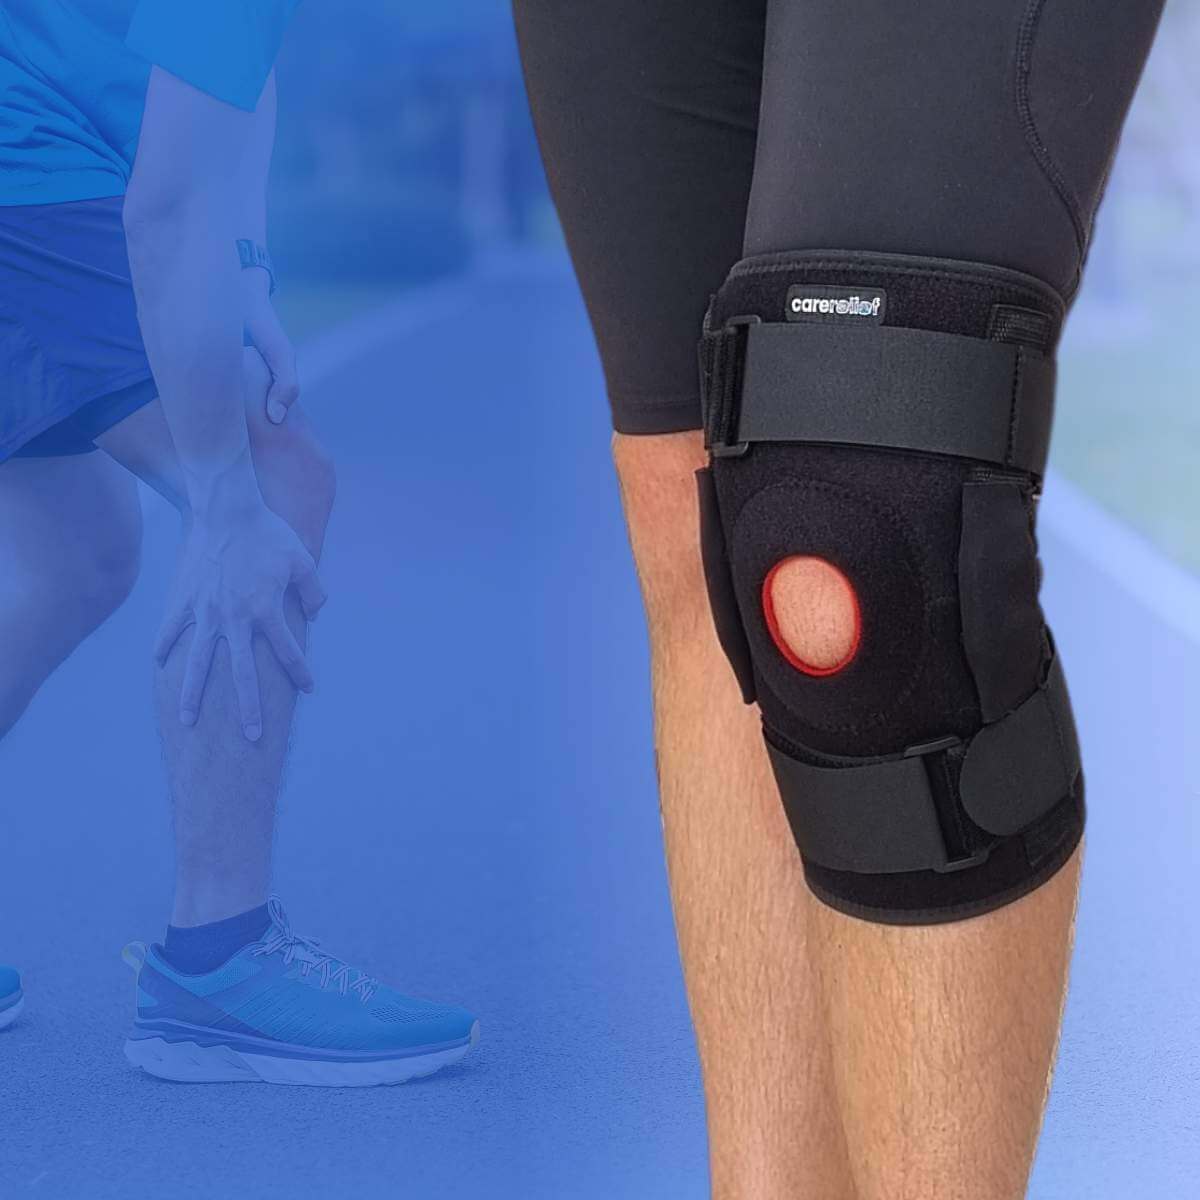 Køb knæbind, knæbandage og støttebind med støtte til knæet efter overbelastningsskader, springerknæ, meniskskade og korsbåndsskade hos Carerelief.